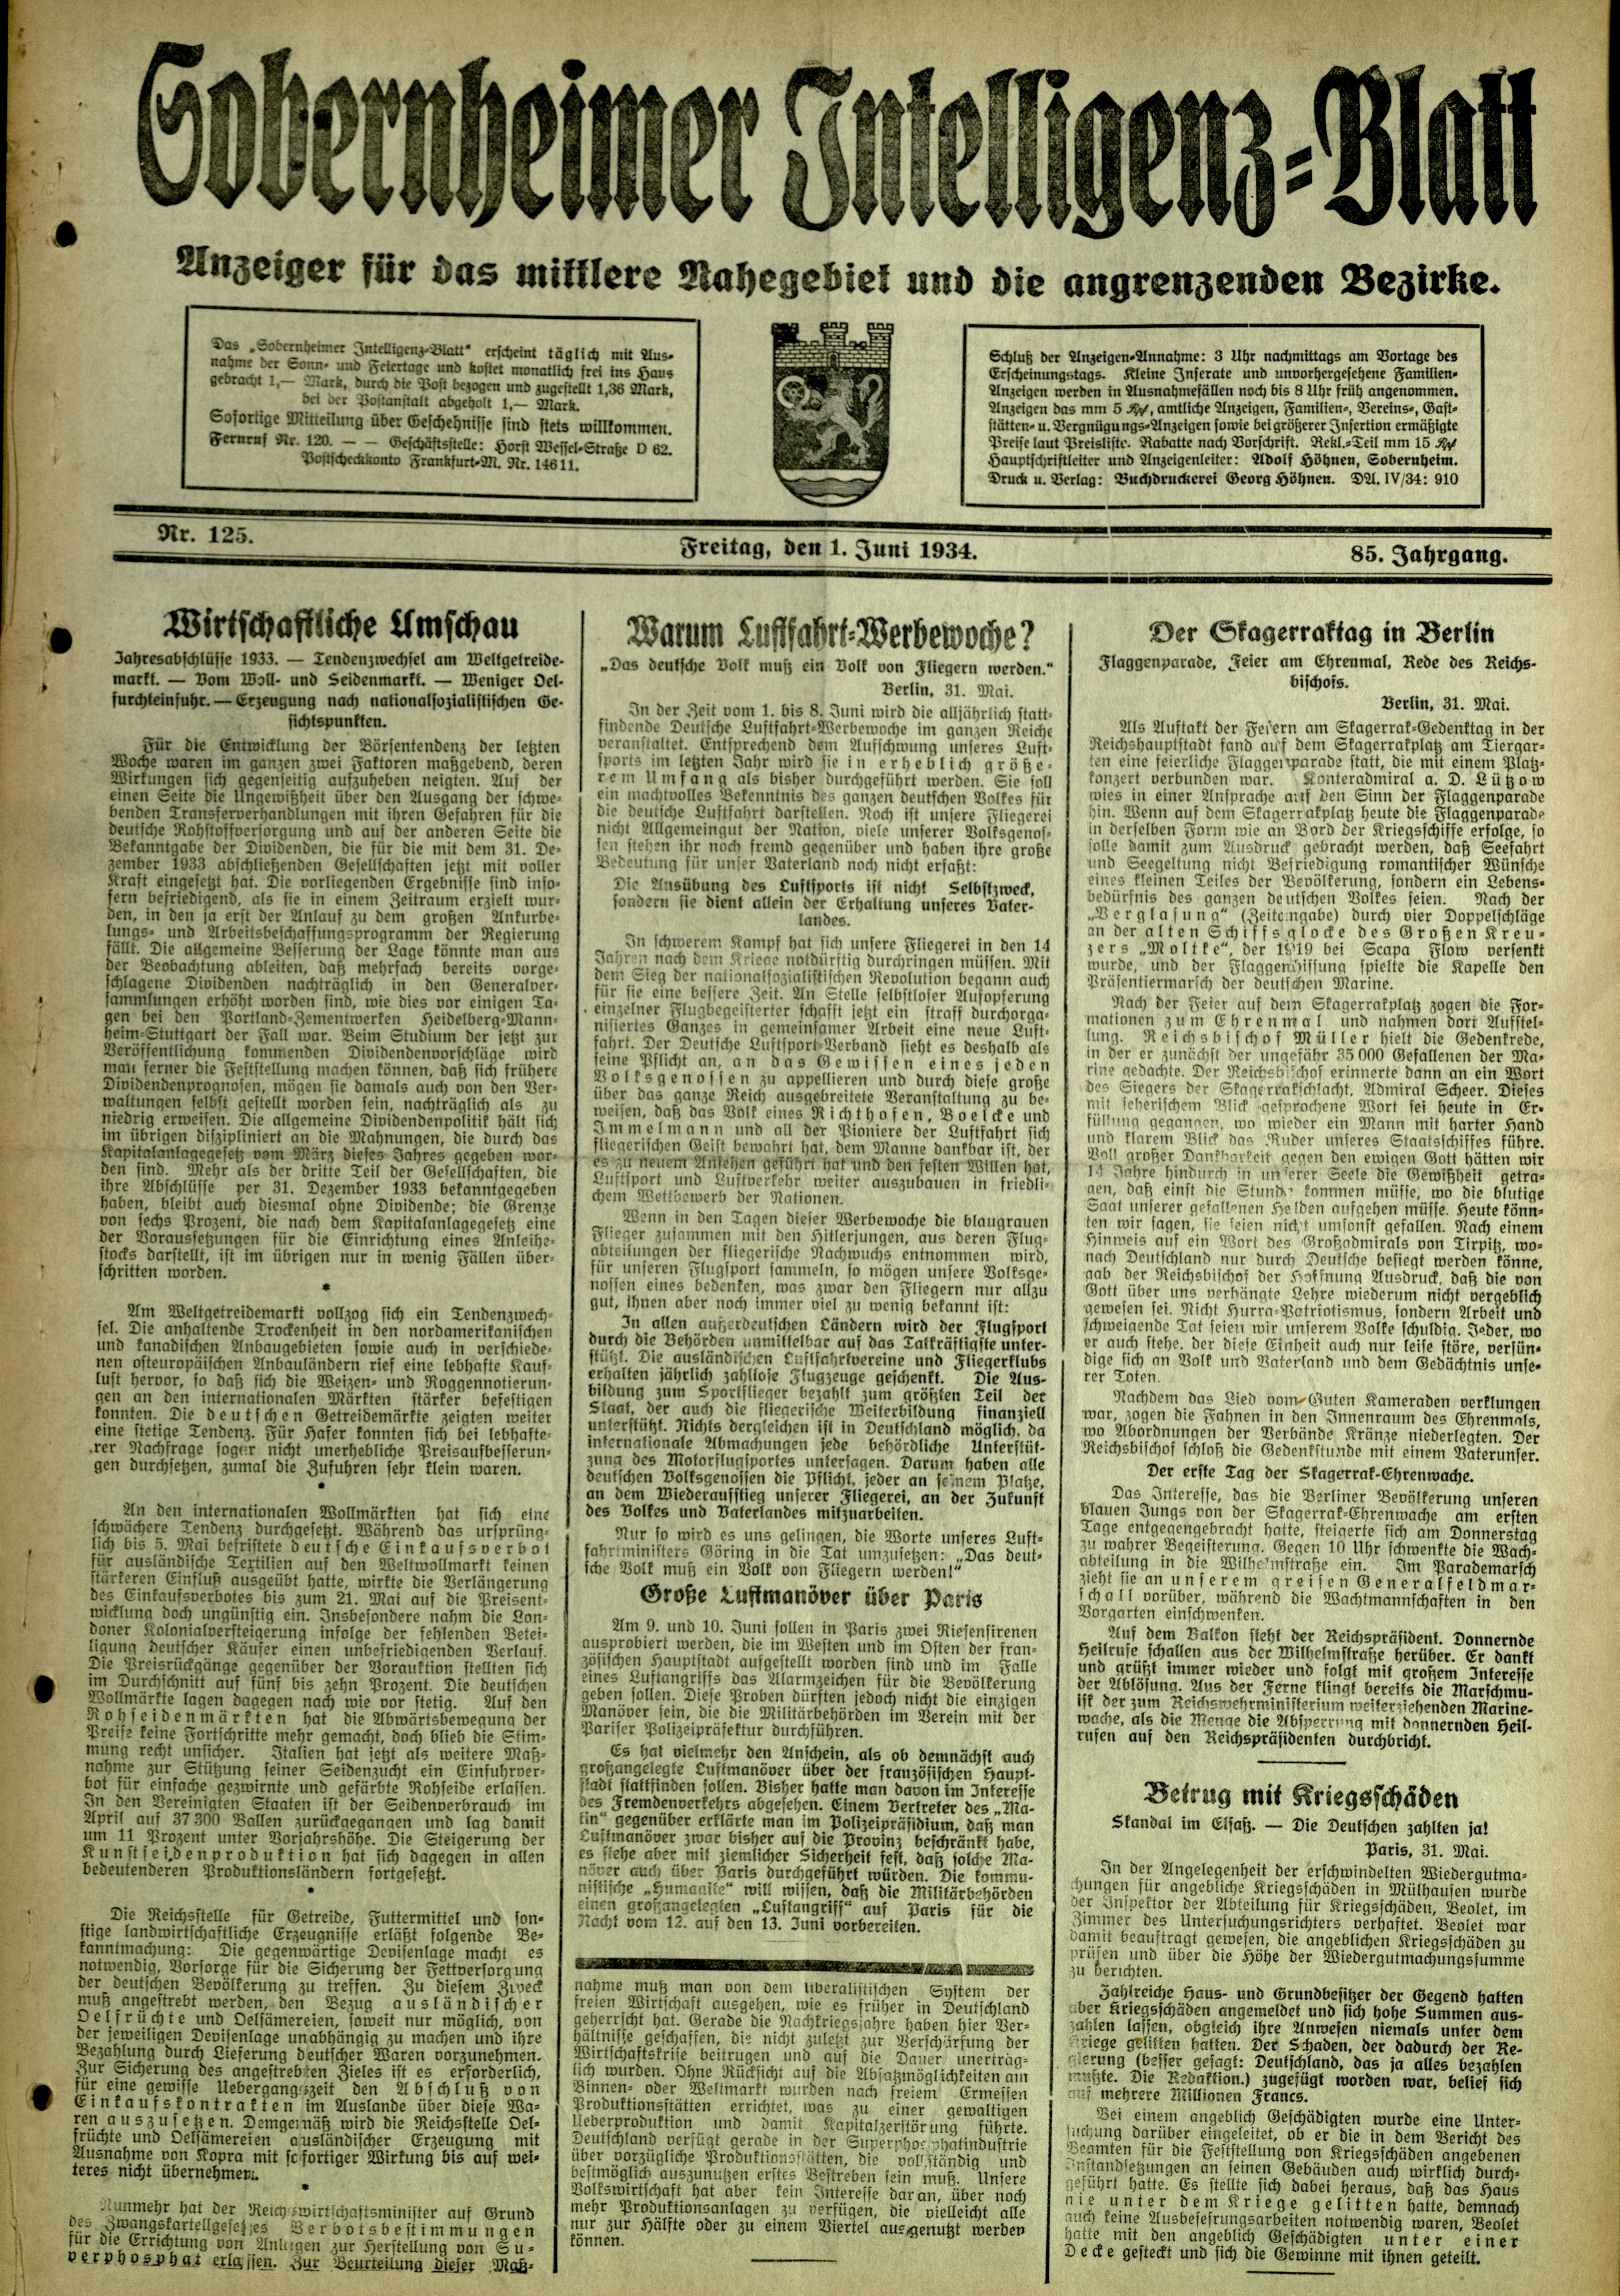 Zeitung: Sobernheimer Intelligenzblatt; Juni 1934, Jg. 85 Nr. 125 (Heimatmuseum Bad Sobernheim CC BY-NC-SA)